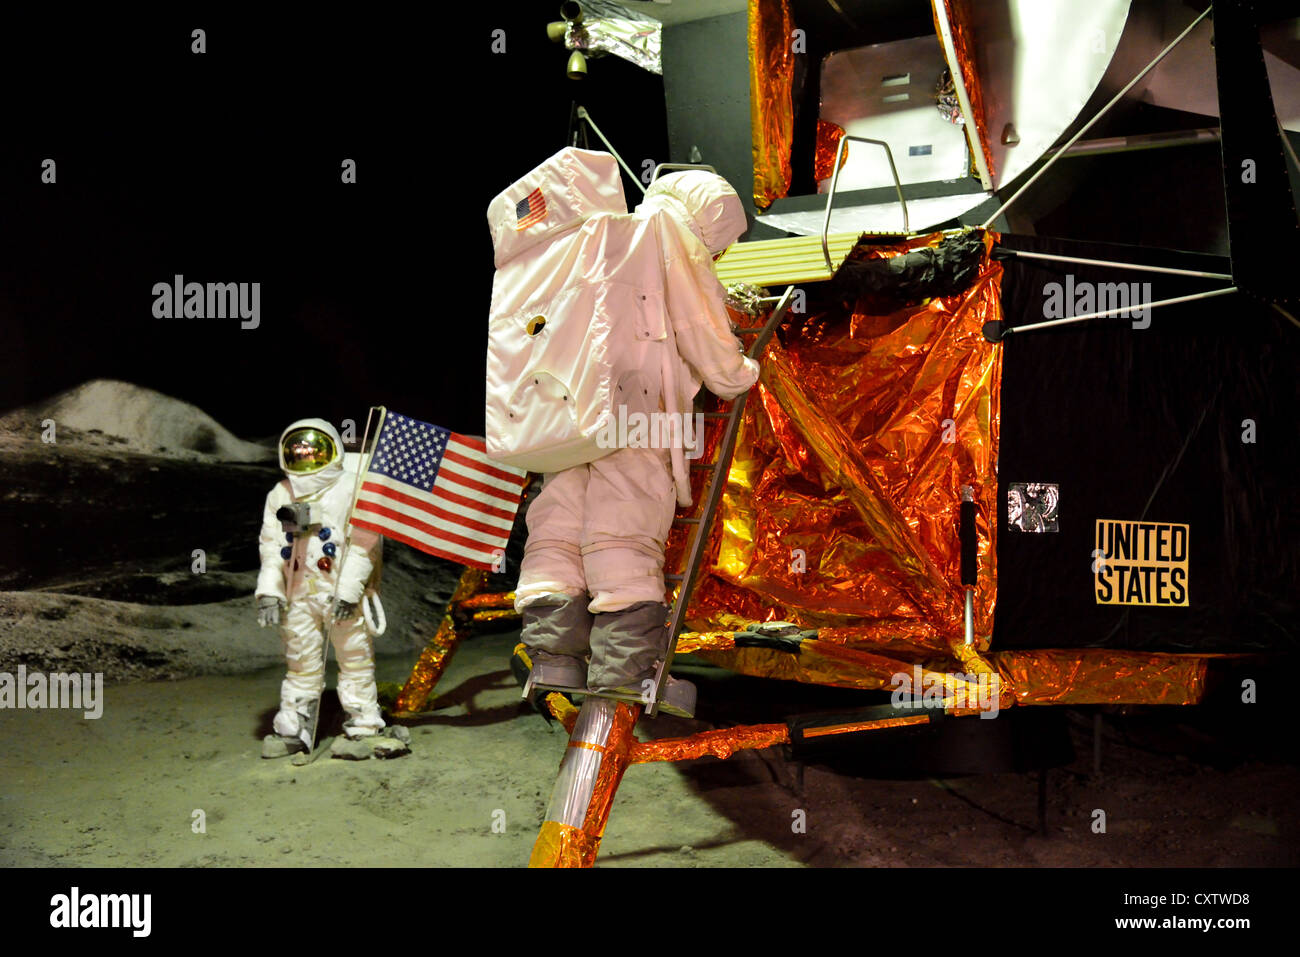 Visualizzazione di Stati Uniti Apollo lunar modulo di atterraggio. Spazio expo, Noordwijk, Paesi Bassi. Foto Stock